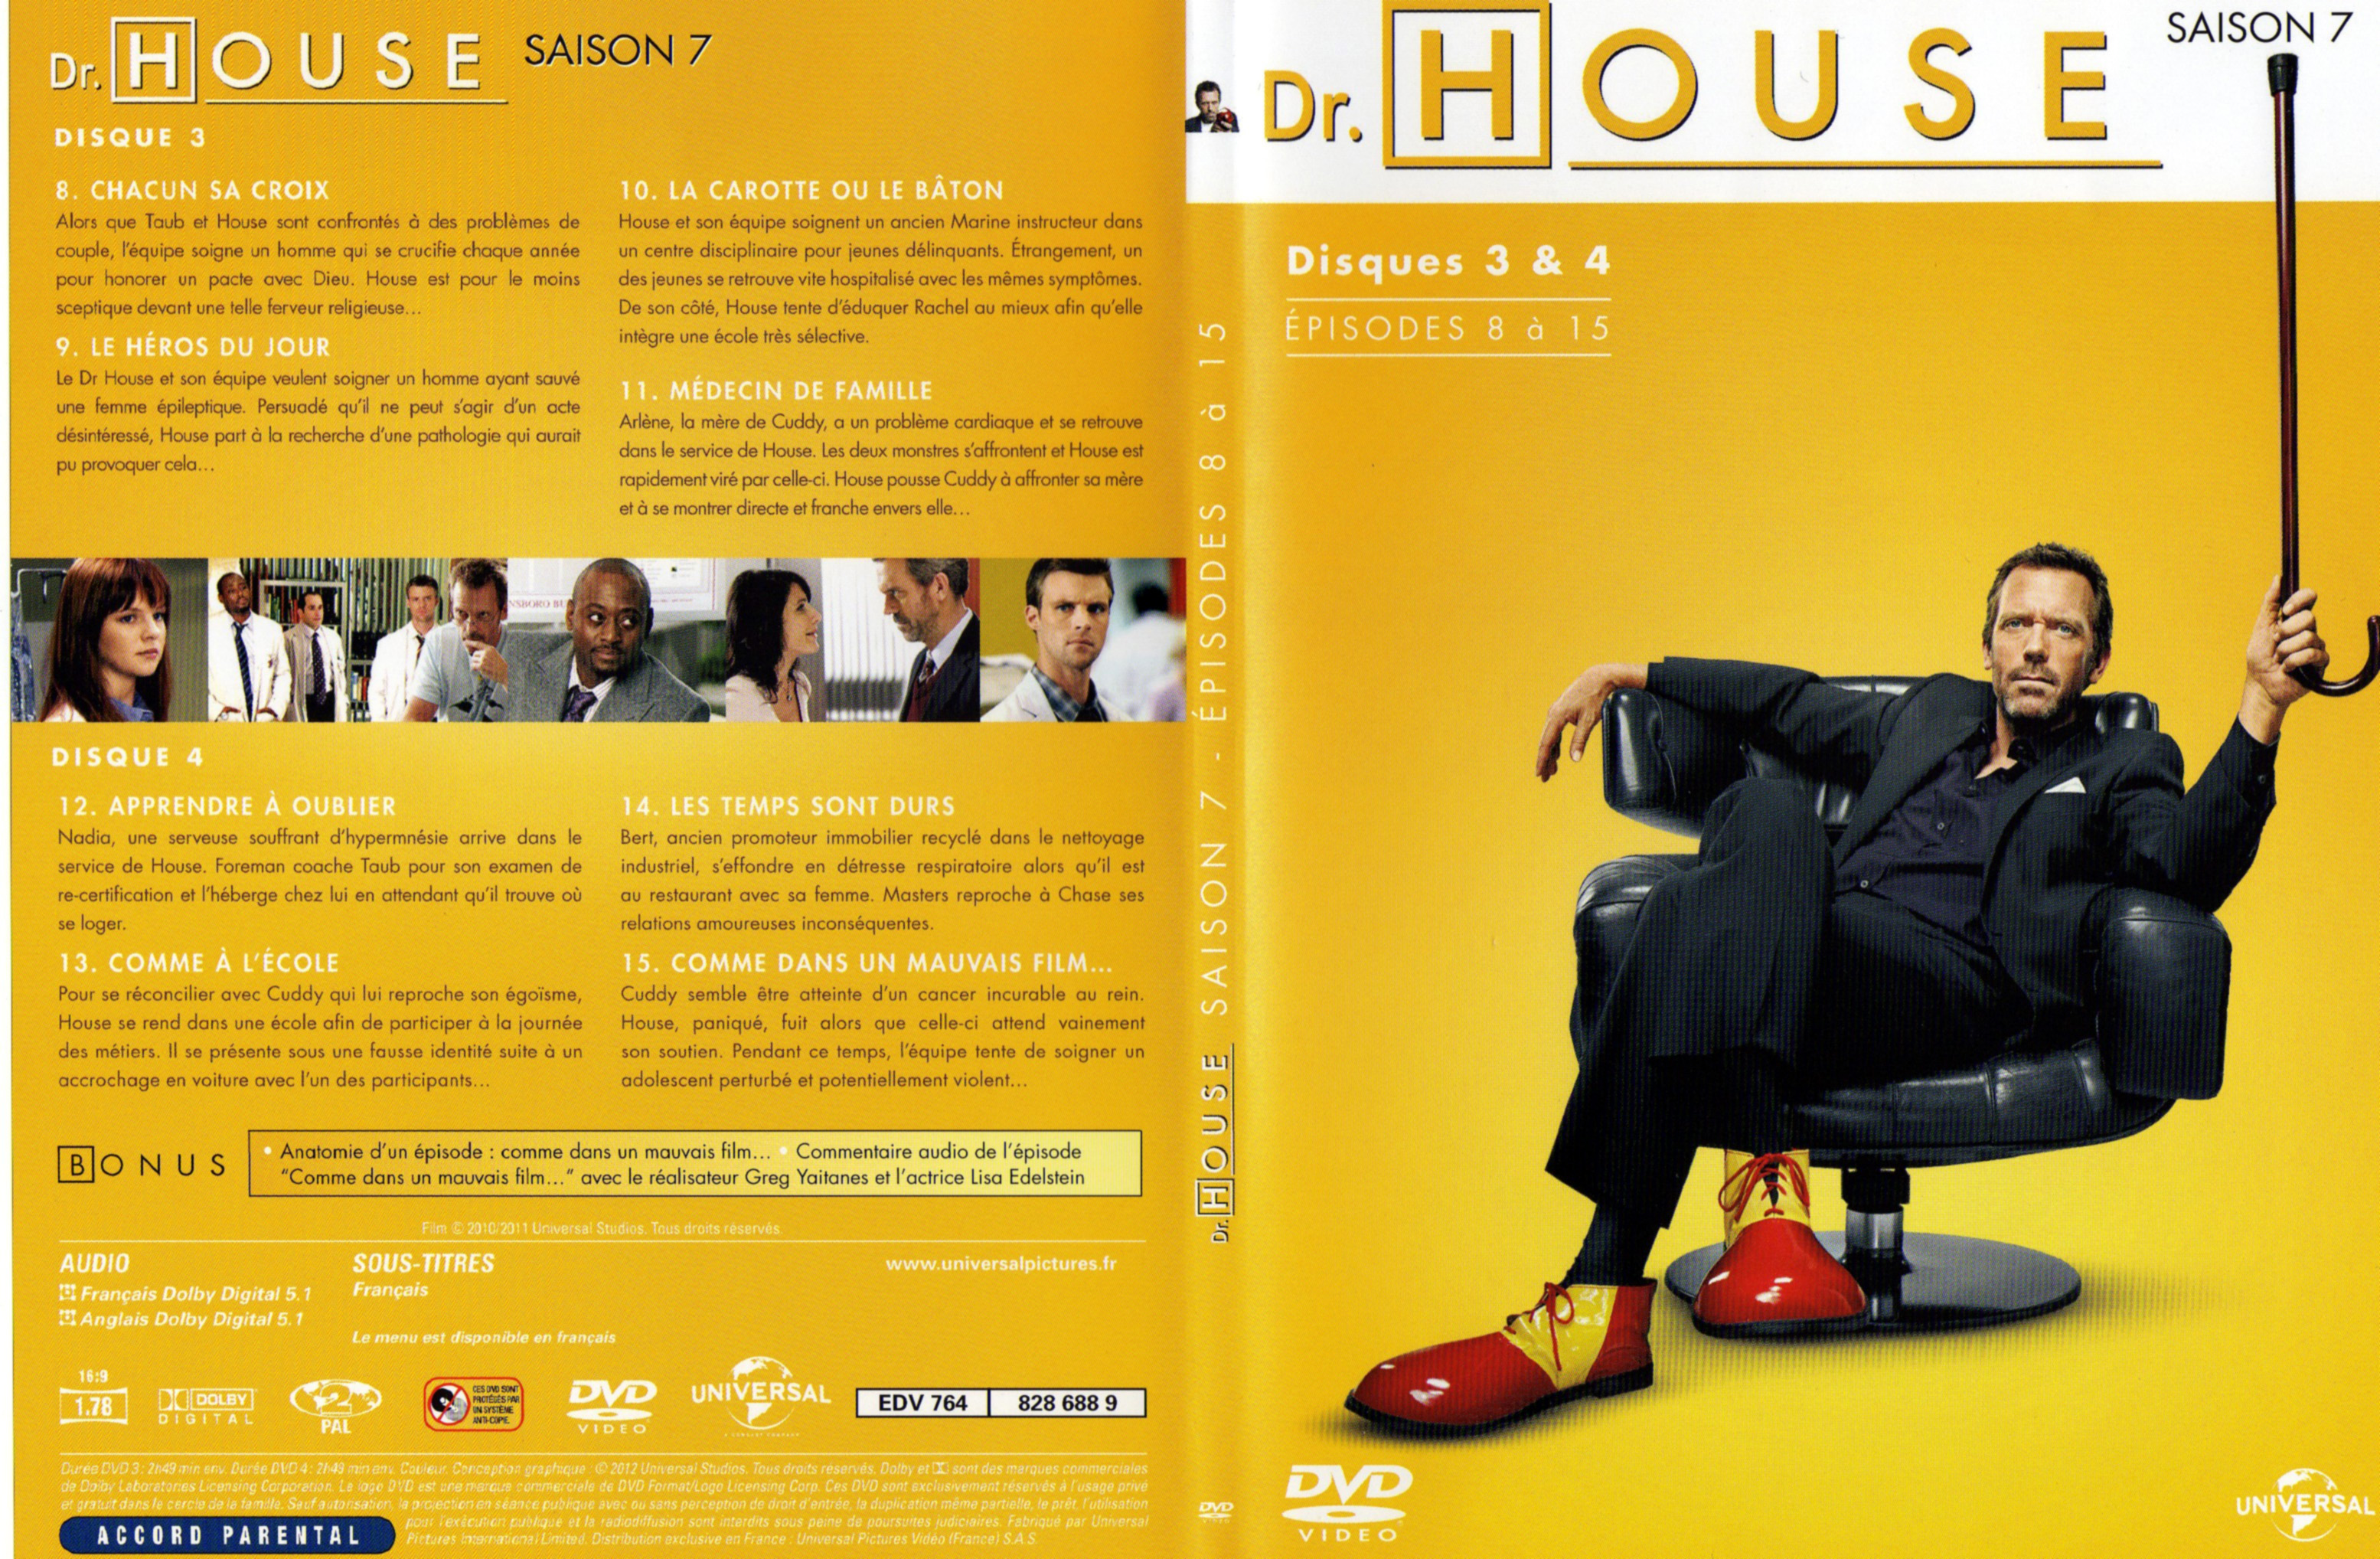 Jaquette DVD Dr House Saison 7 DVD 2